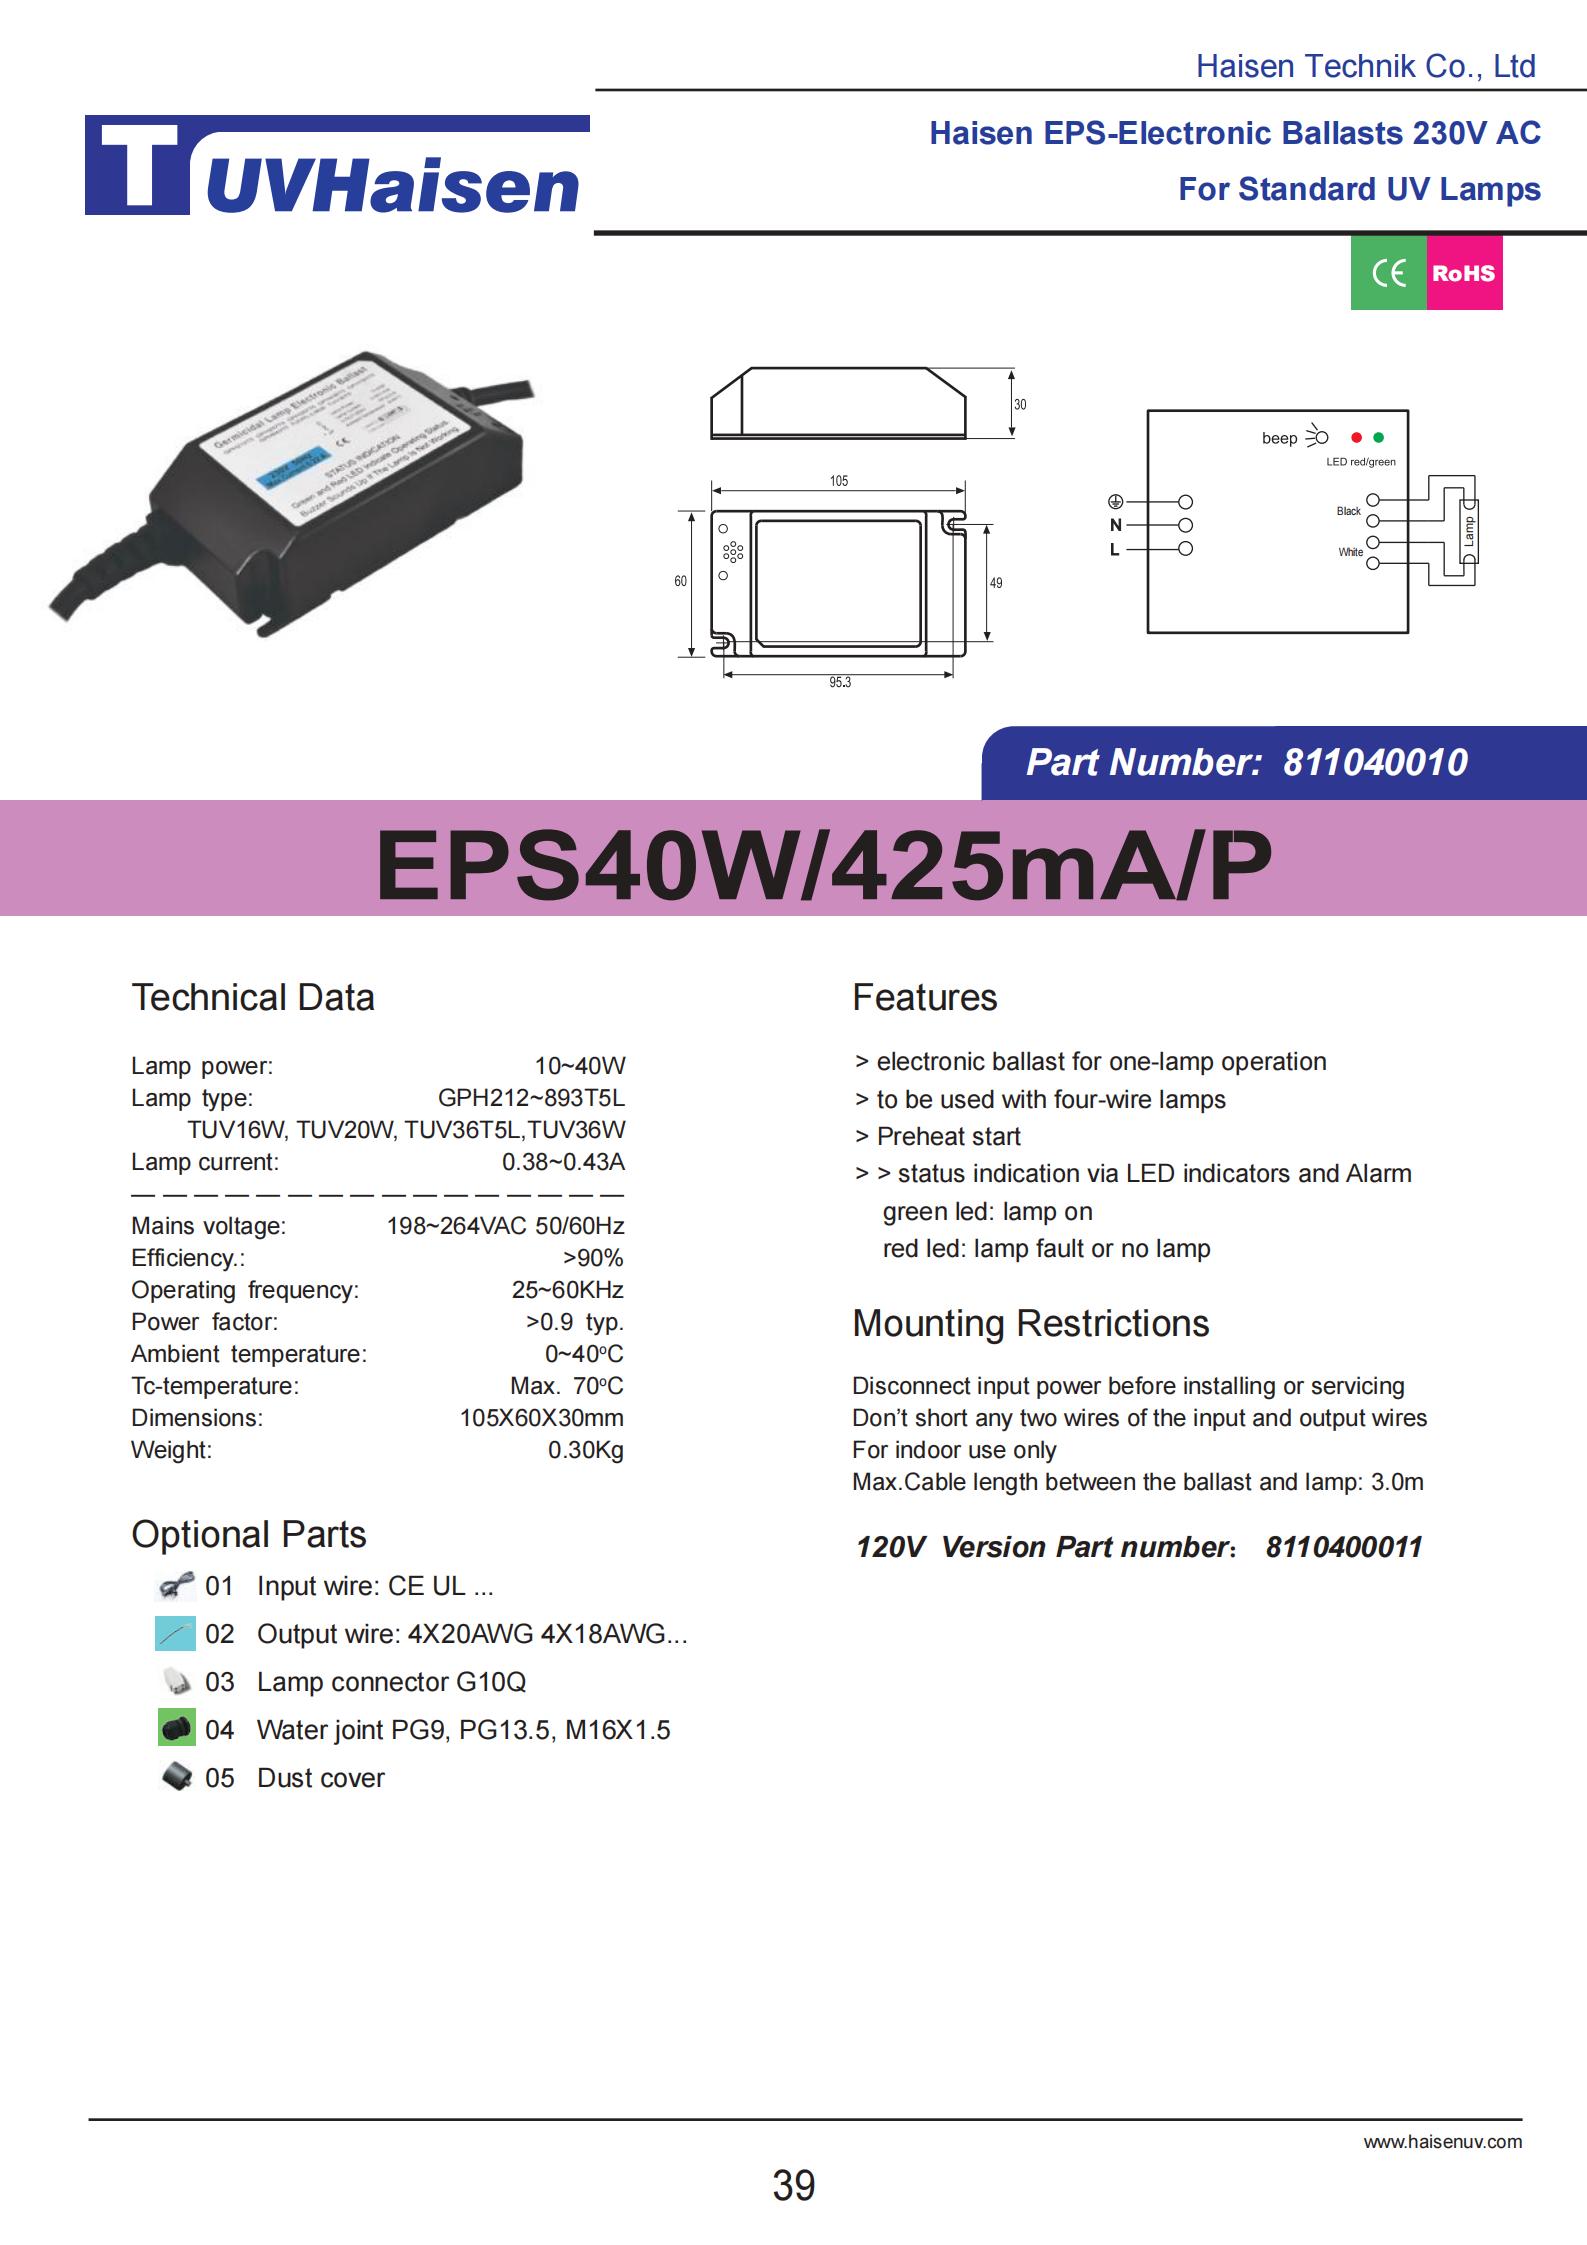  UV lamp ballast EPS40W/425mA/P for uv light